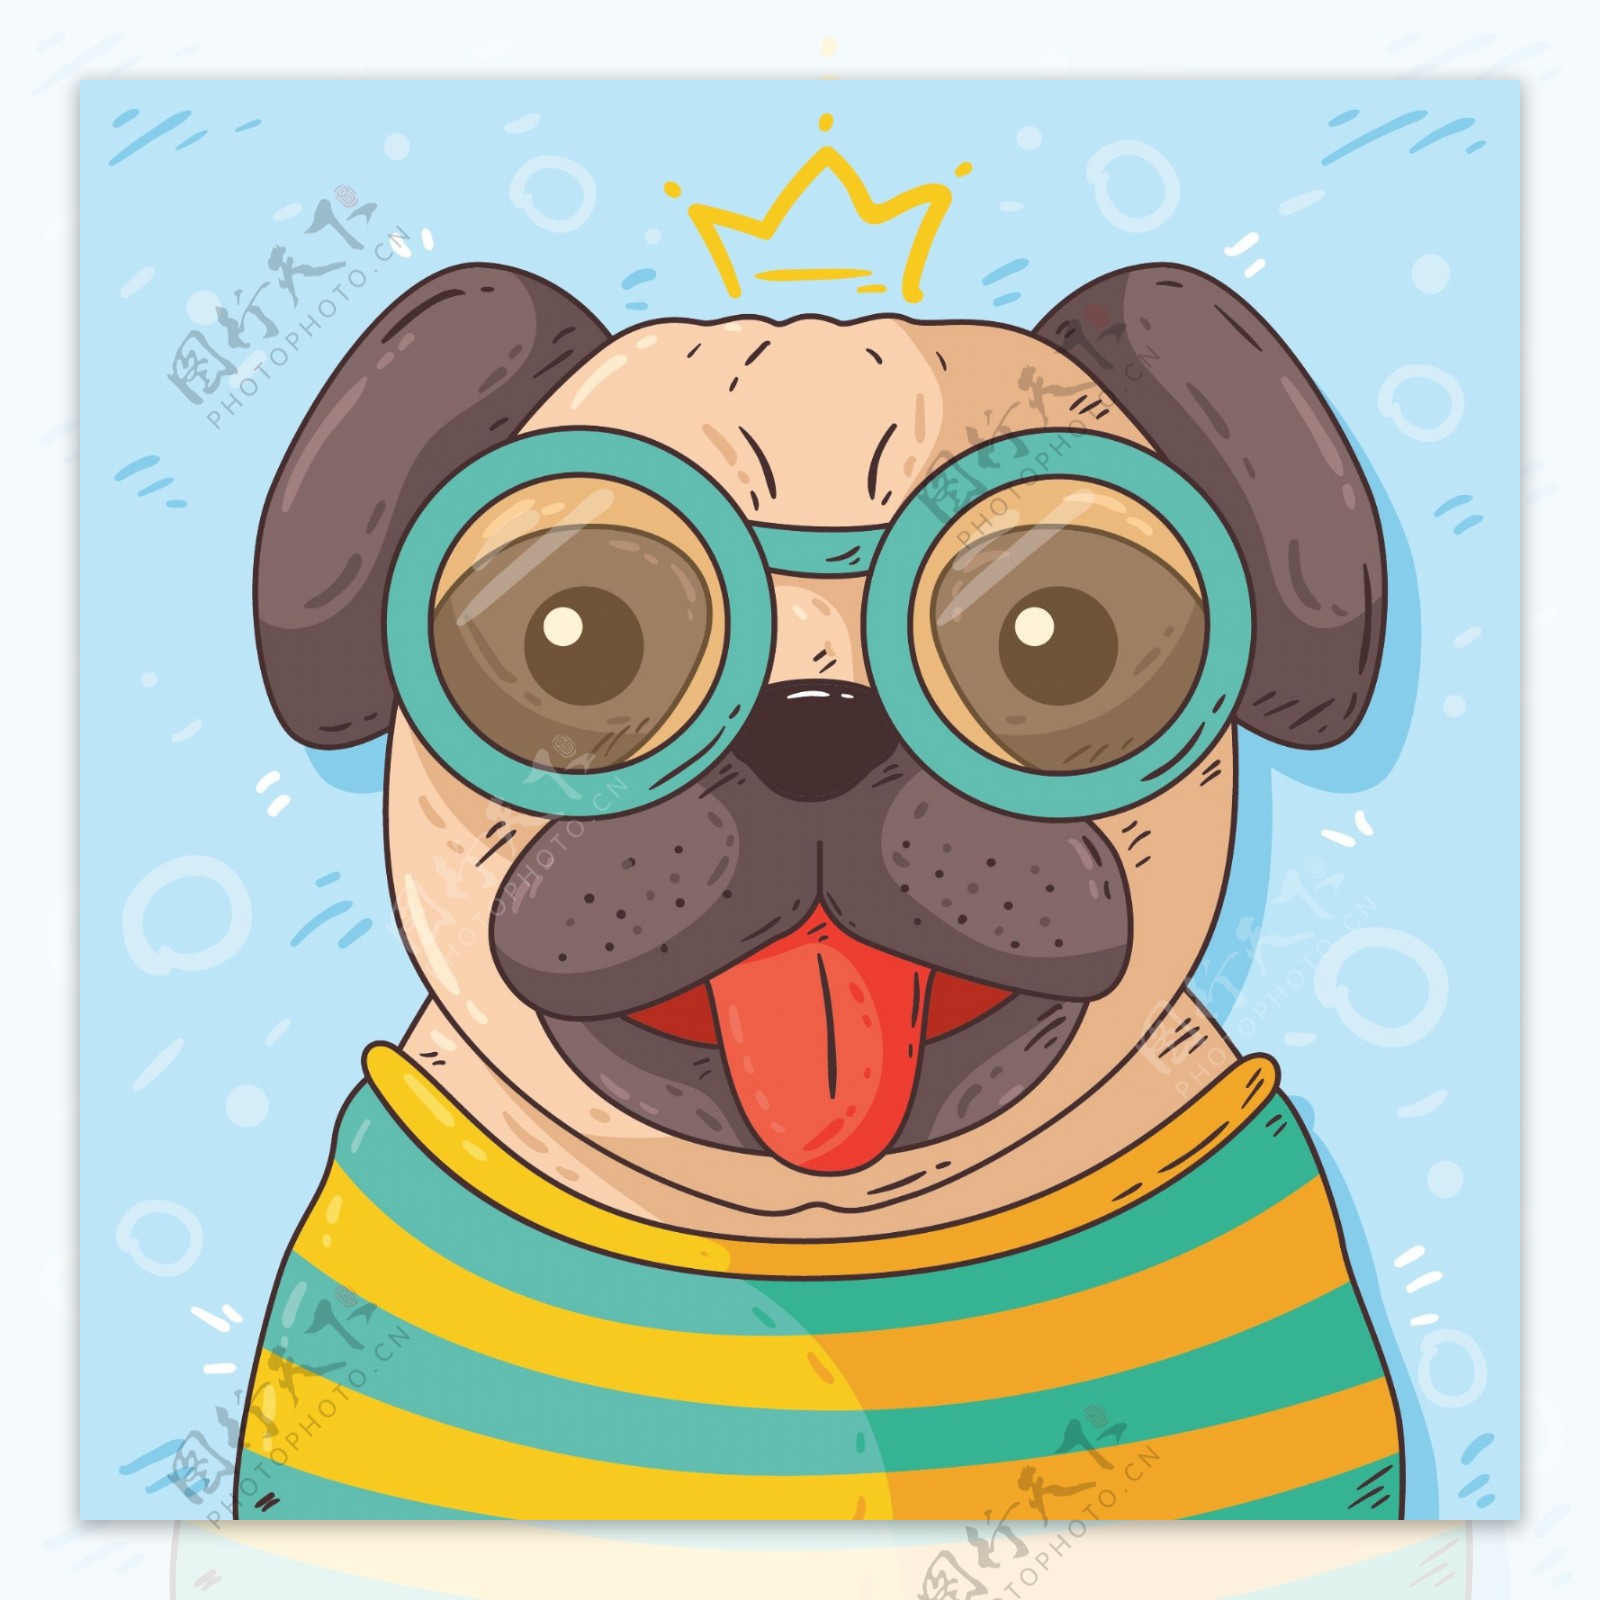 超可爱带眼镜的狗狗图片-狗狗萌图-屈阿零可爱屋